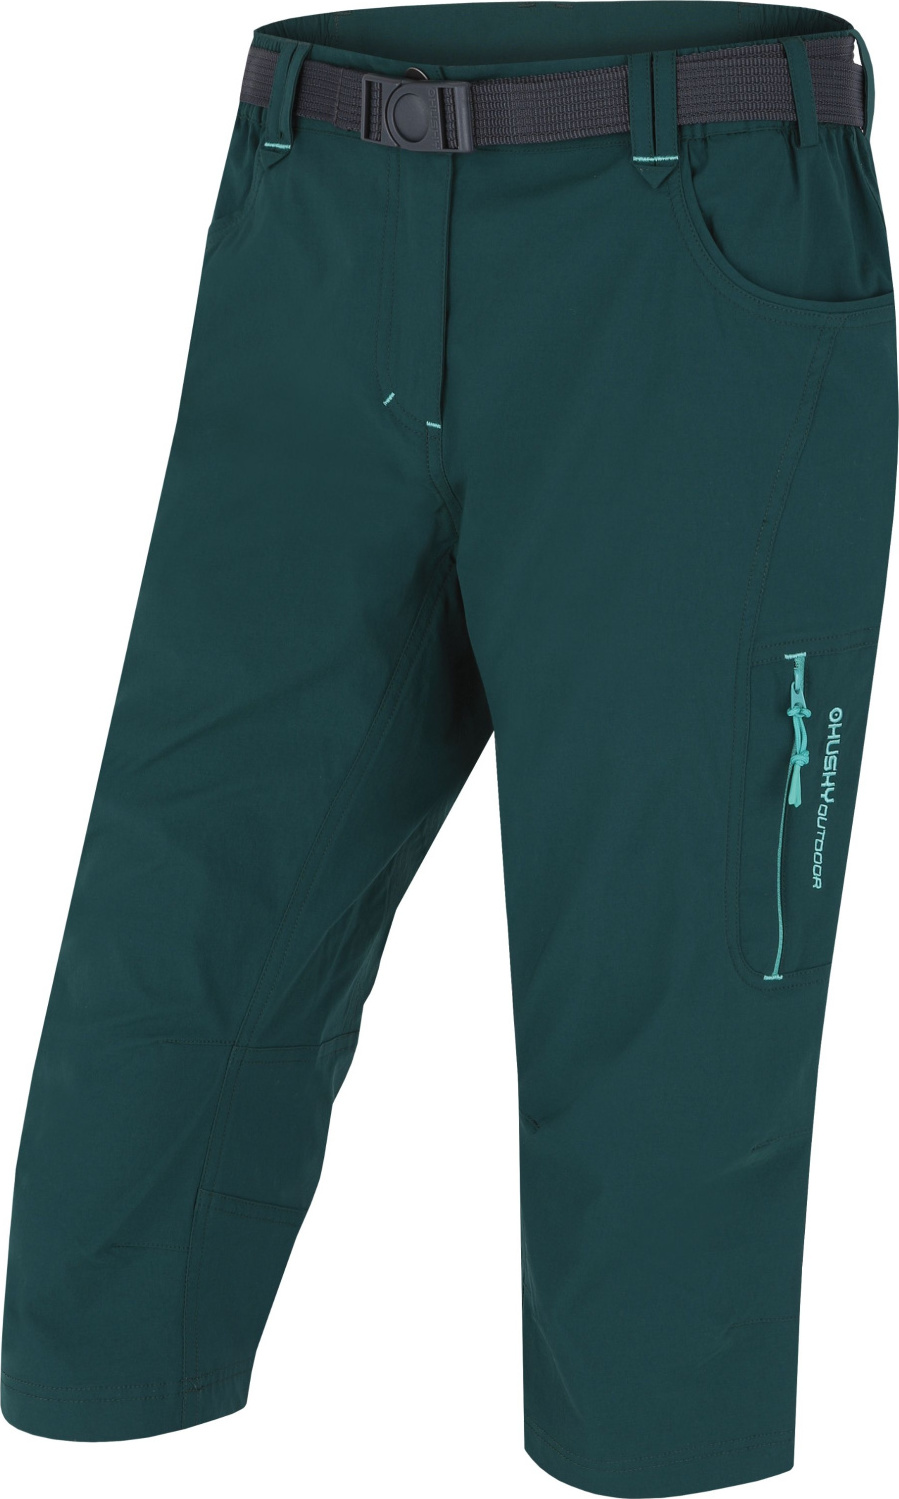 Dámské 3/4 kalhoty HUSKY Klery zelené Velikost: M